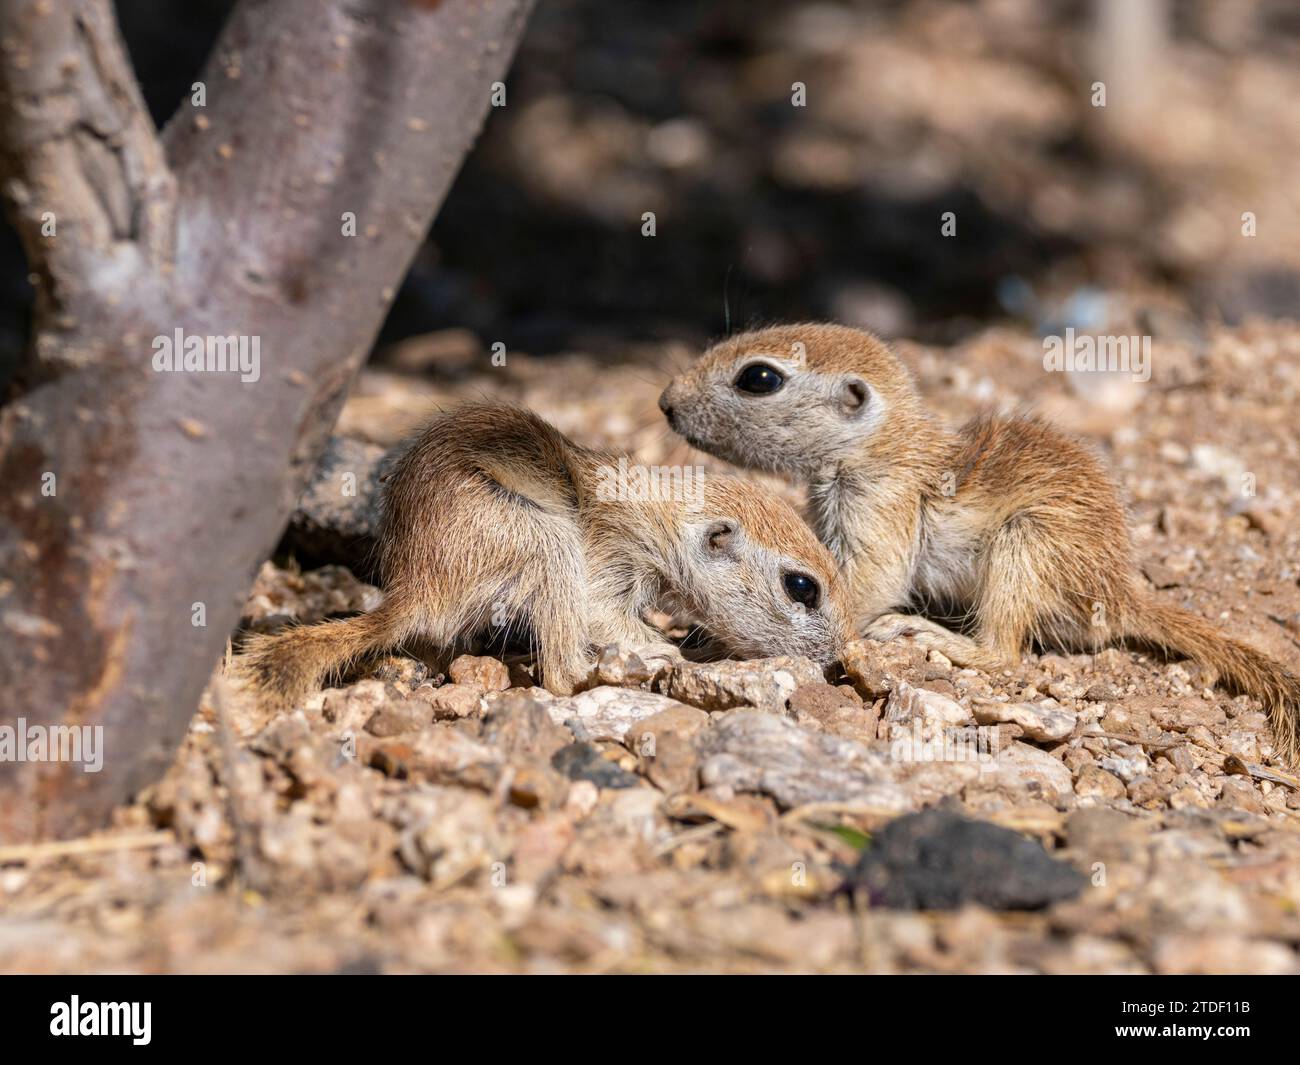 Round-tailed ground squirrels (Xerospermophilus tereticaudus), Brandi Fenton Park, Tucson, Arizona, United States of America, North America Stock Photo